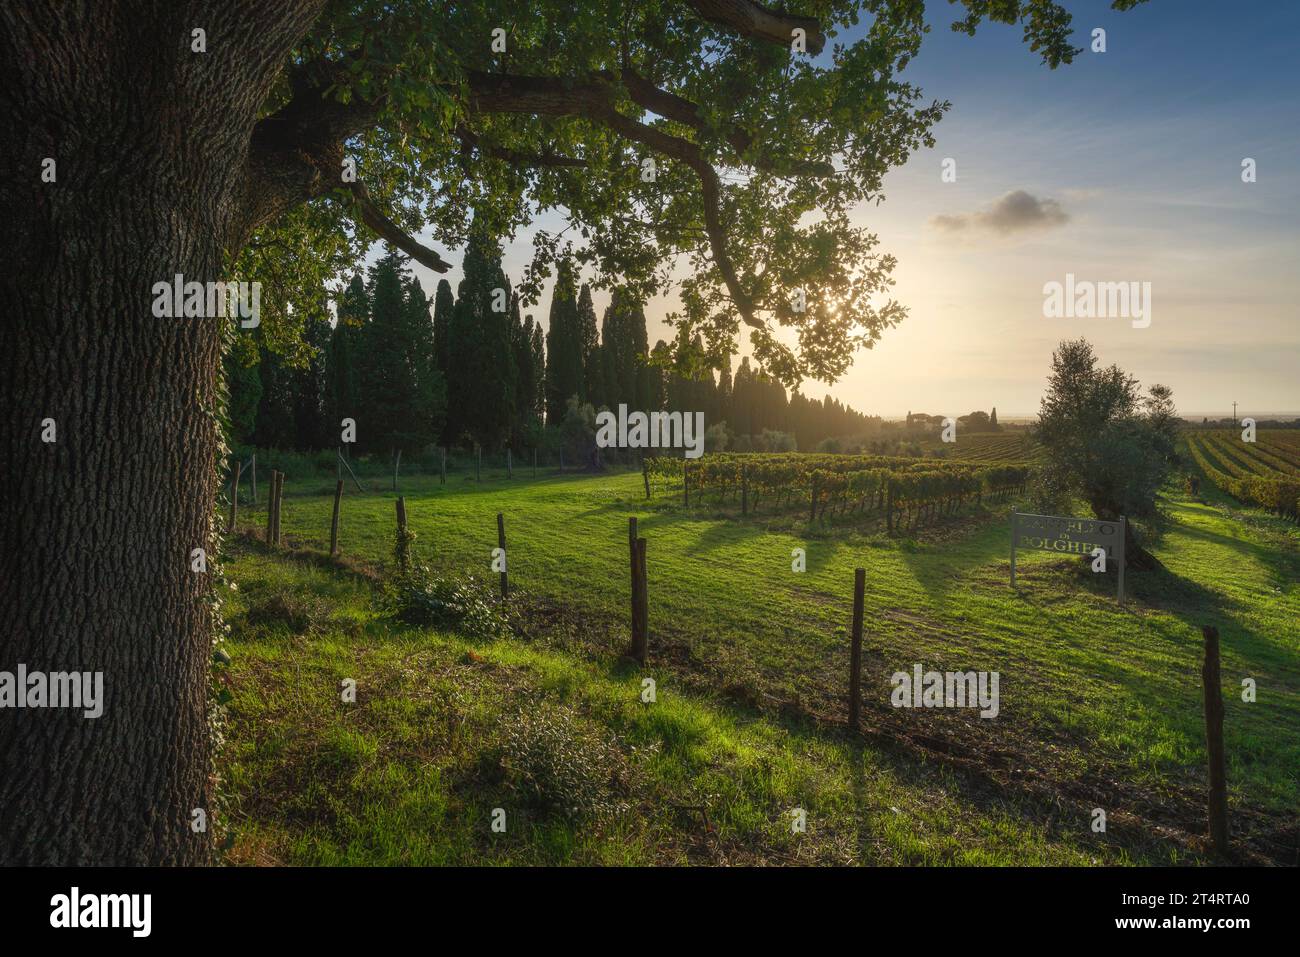 BOLGHERI, TOSCANA - ITALIA - 7 OTTOBRE 2020: Vigneti e ulivi del Castello di Bolgheri al tramonto. Albero sulla sinistra nella stagione autunnale. Orizzontale in Foto Stock